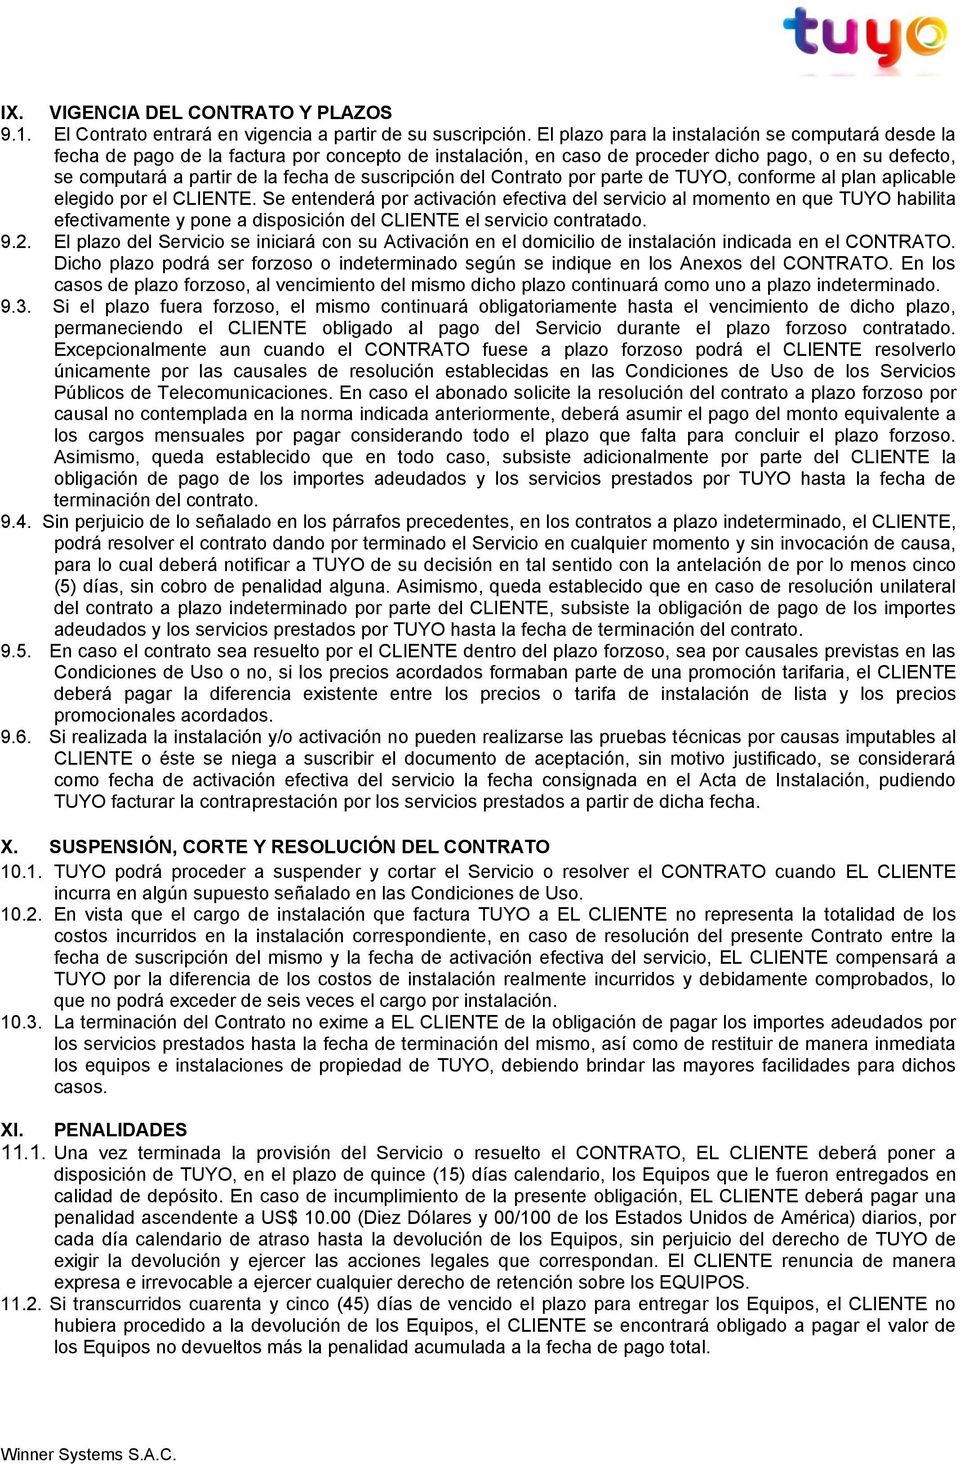 suscripción del Contrato por parte de TUYO, conforme al plan aplicable elegido por el CLIENTE.